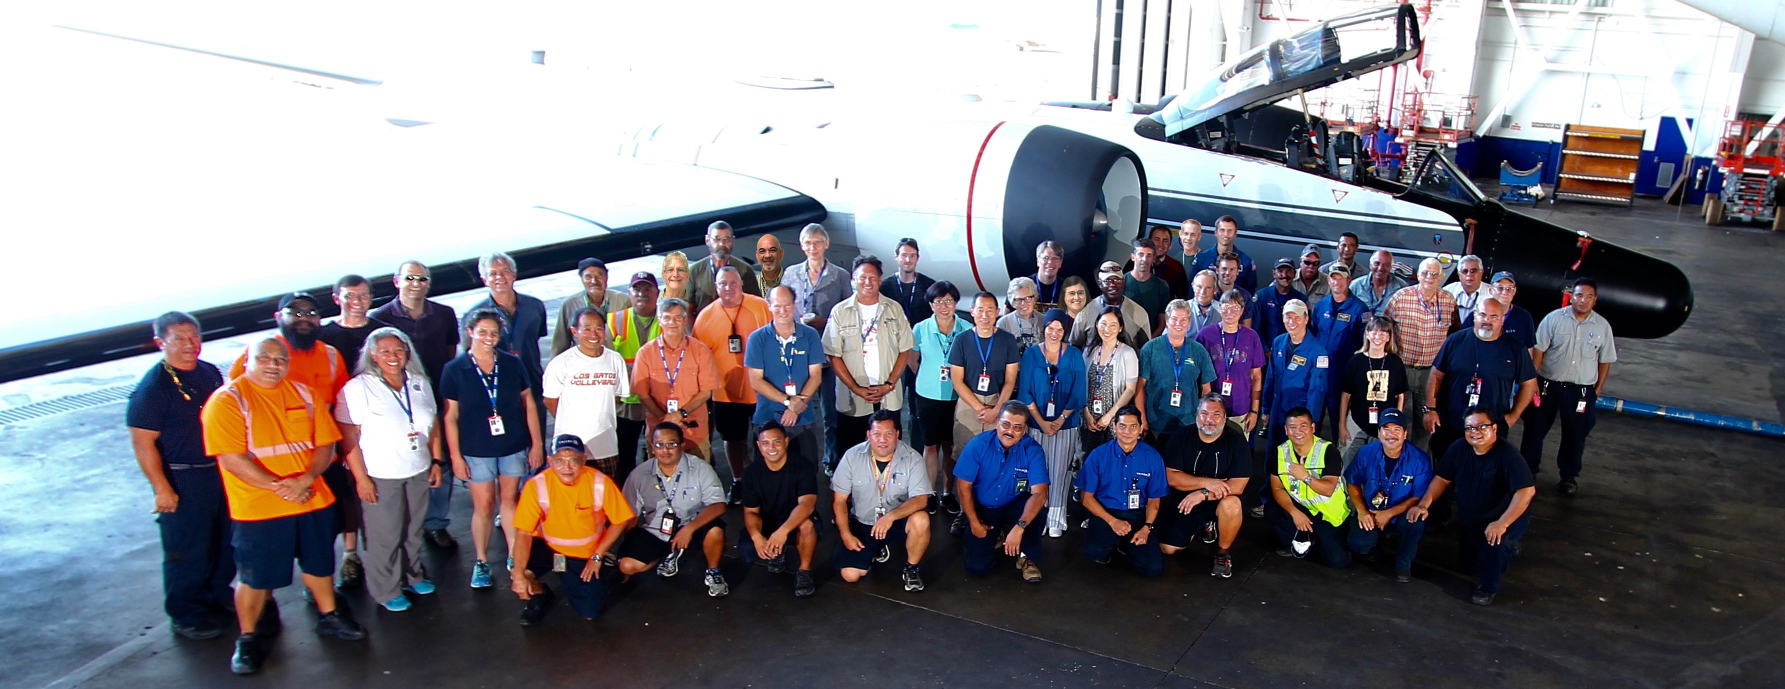 NASA POSIDON mission, Guam 2016